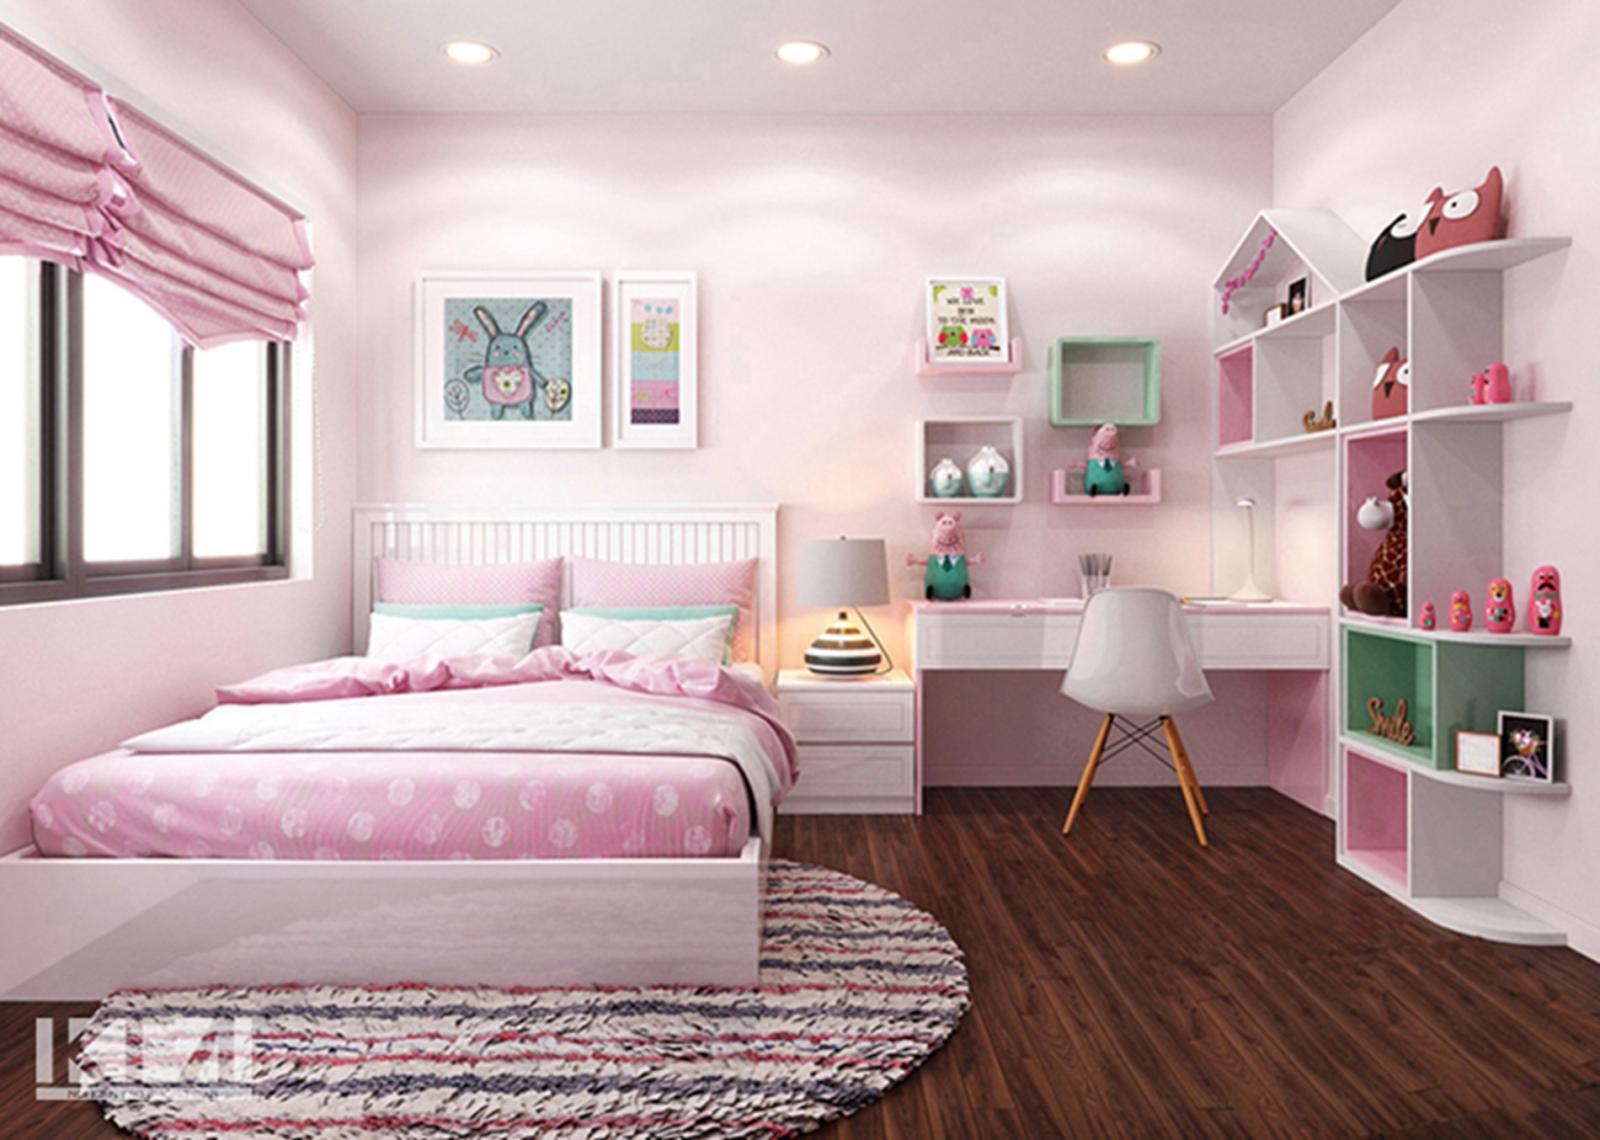 hình ảnh phòng ngủ con gái với thiết kế hiện đại, tông màu hồng phớt chủ đạo